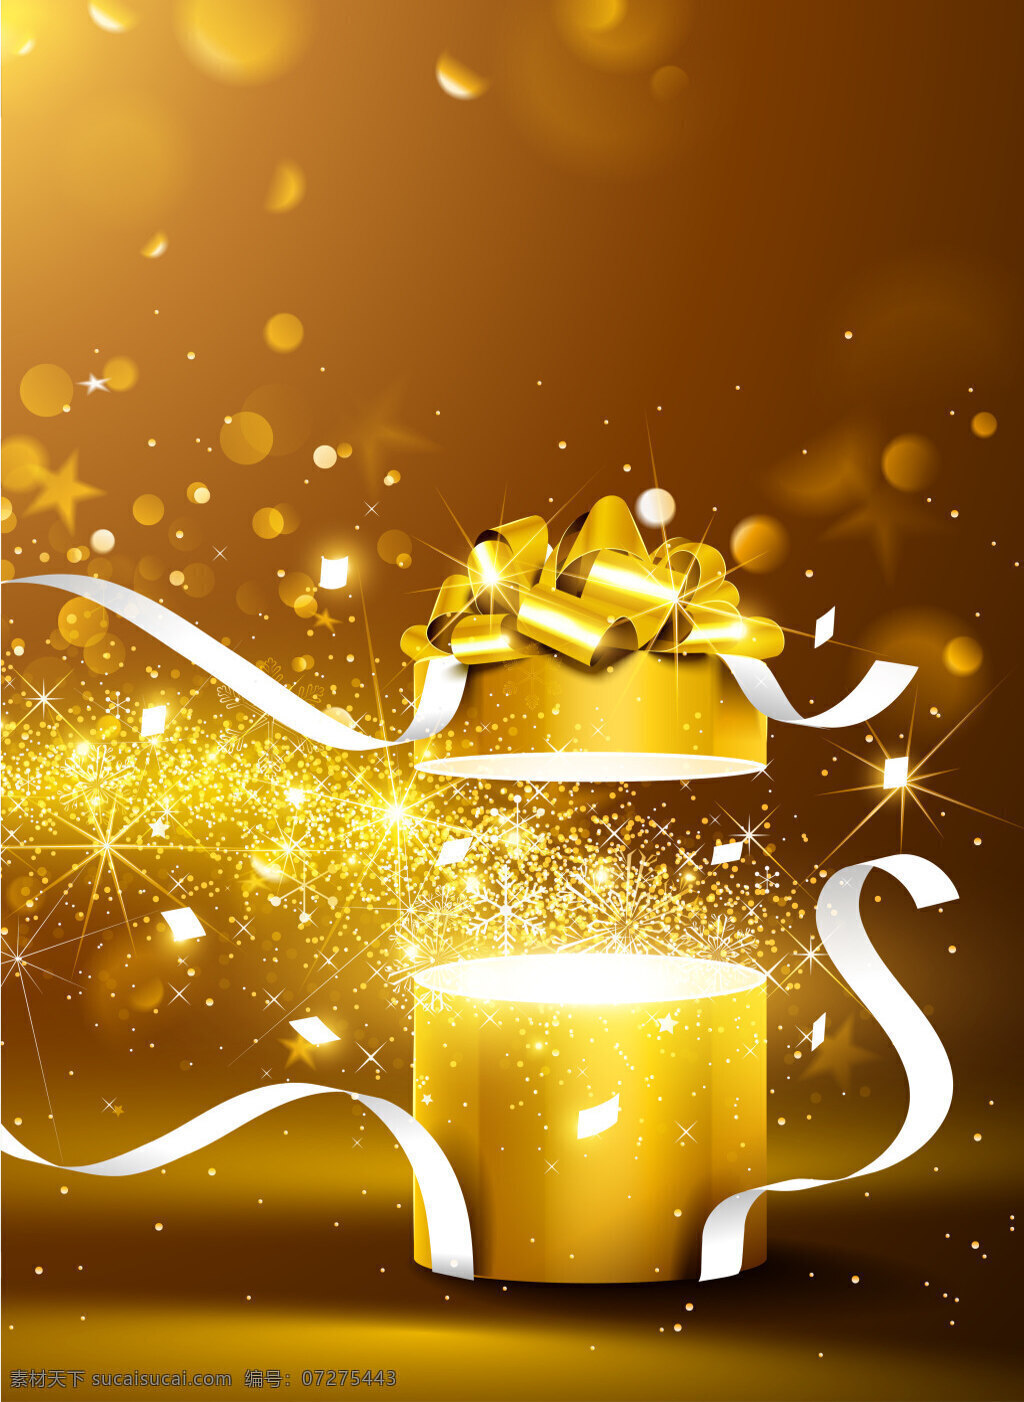 矢量 质感 节日 礼物 盒 背景 金色 星光 梦幻 圣诞节 礼物盒 新年 海报